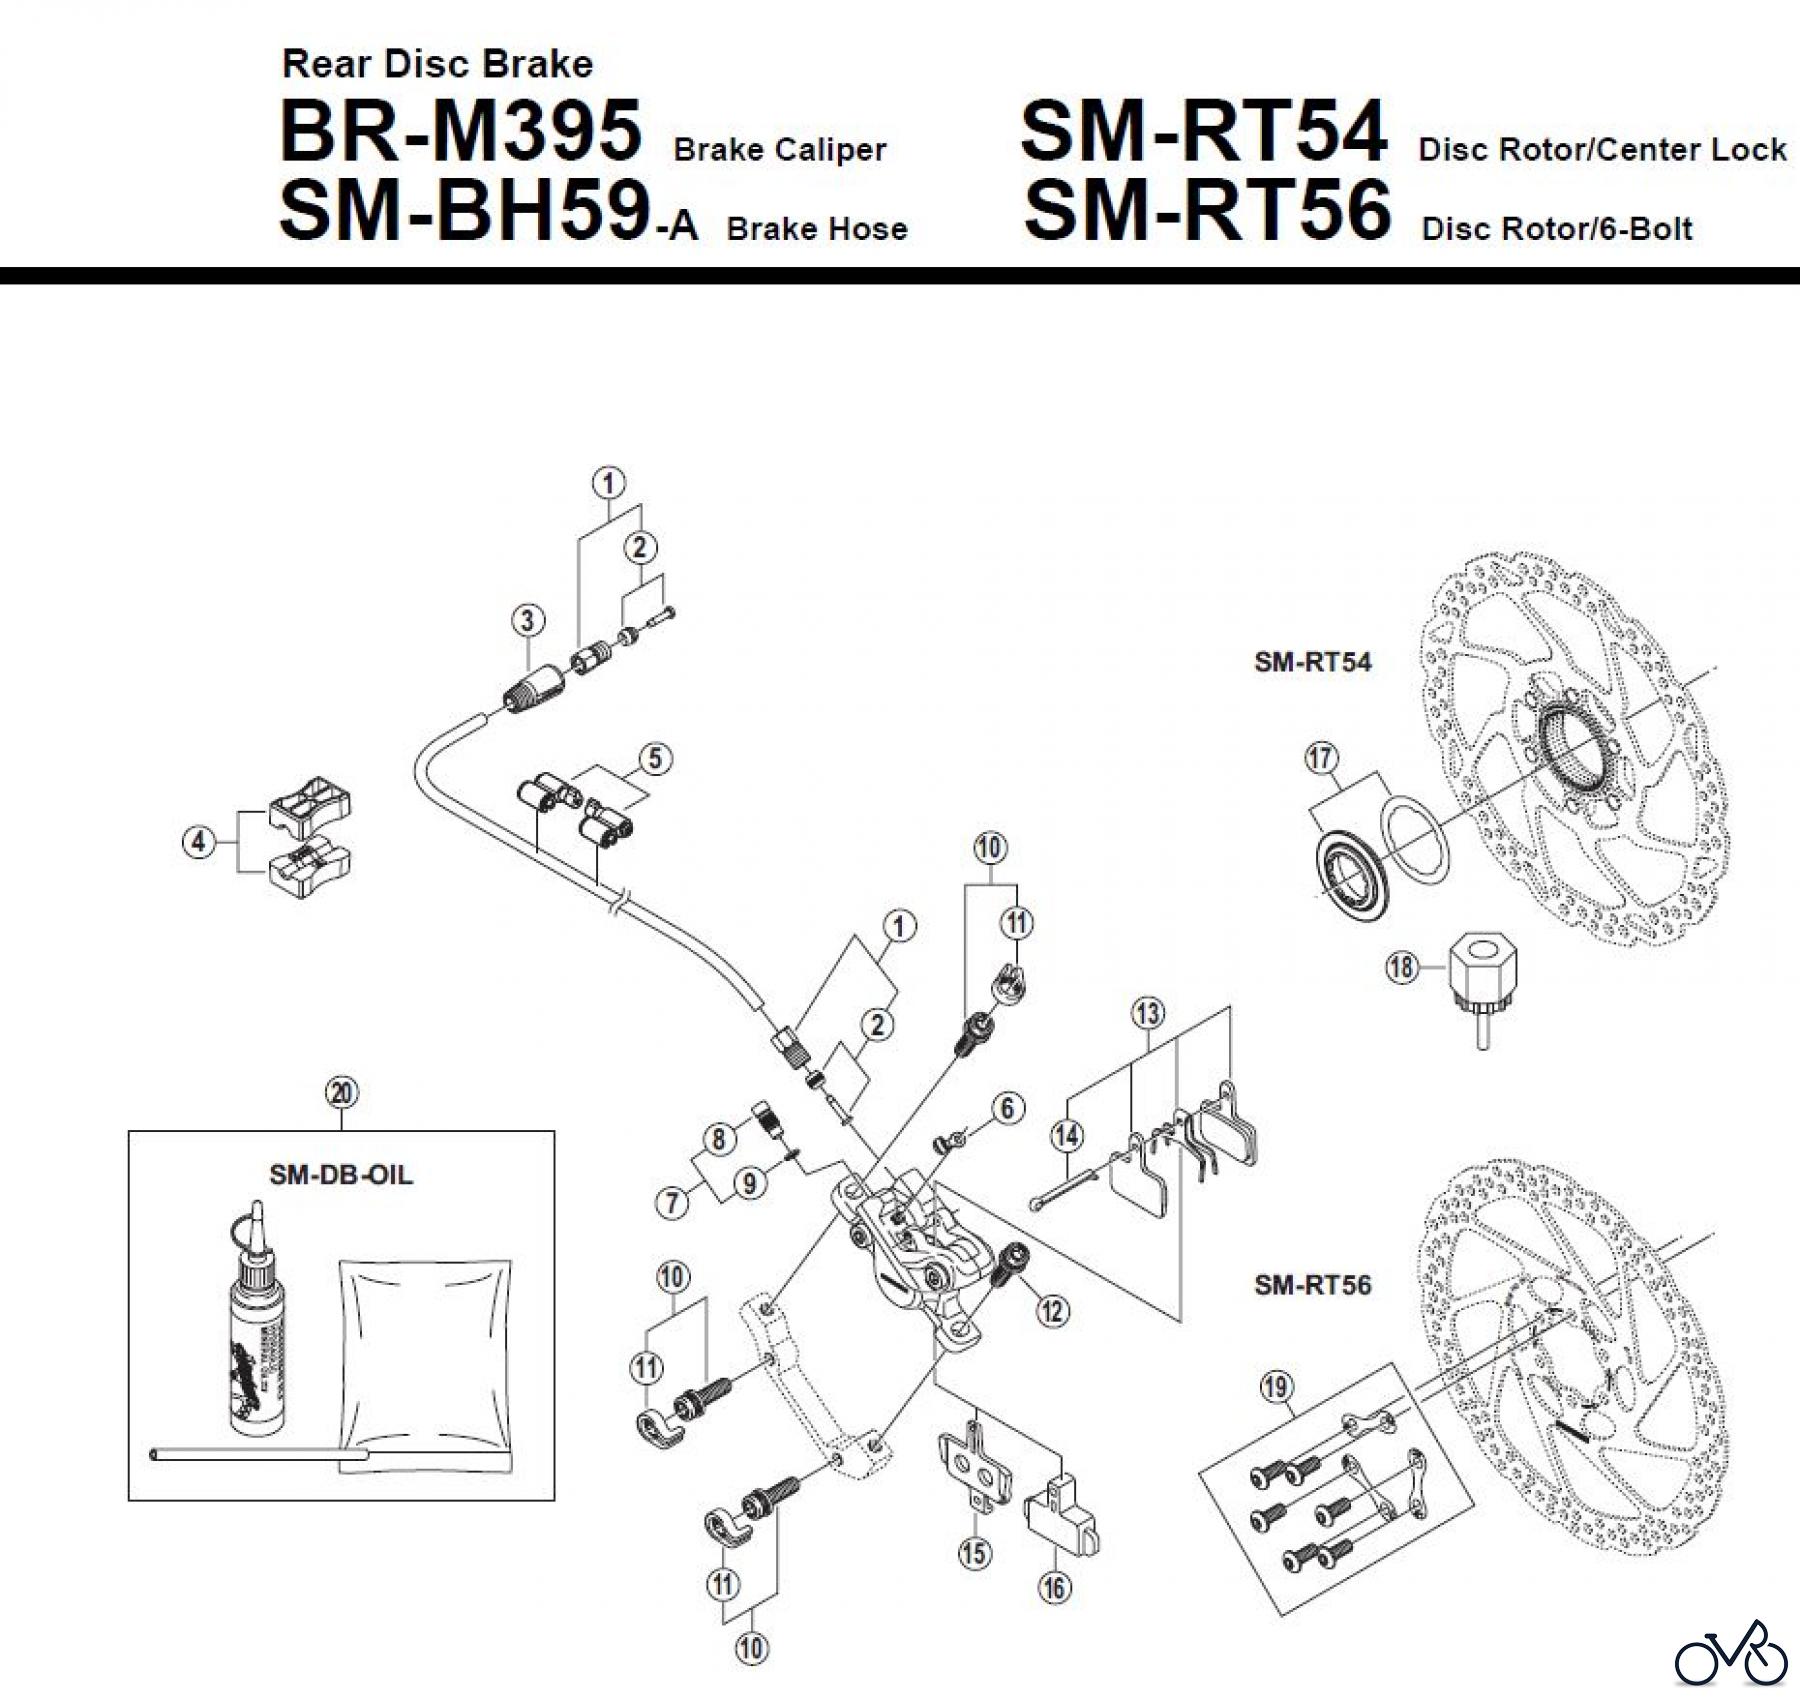  Shimano BR Brake - Bremse BR-M395-R-3268 Rear Disc Brake